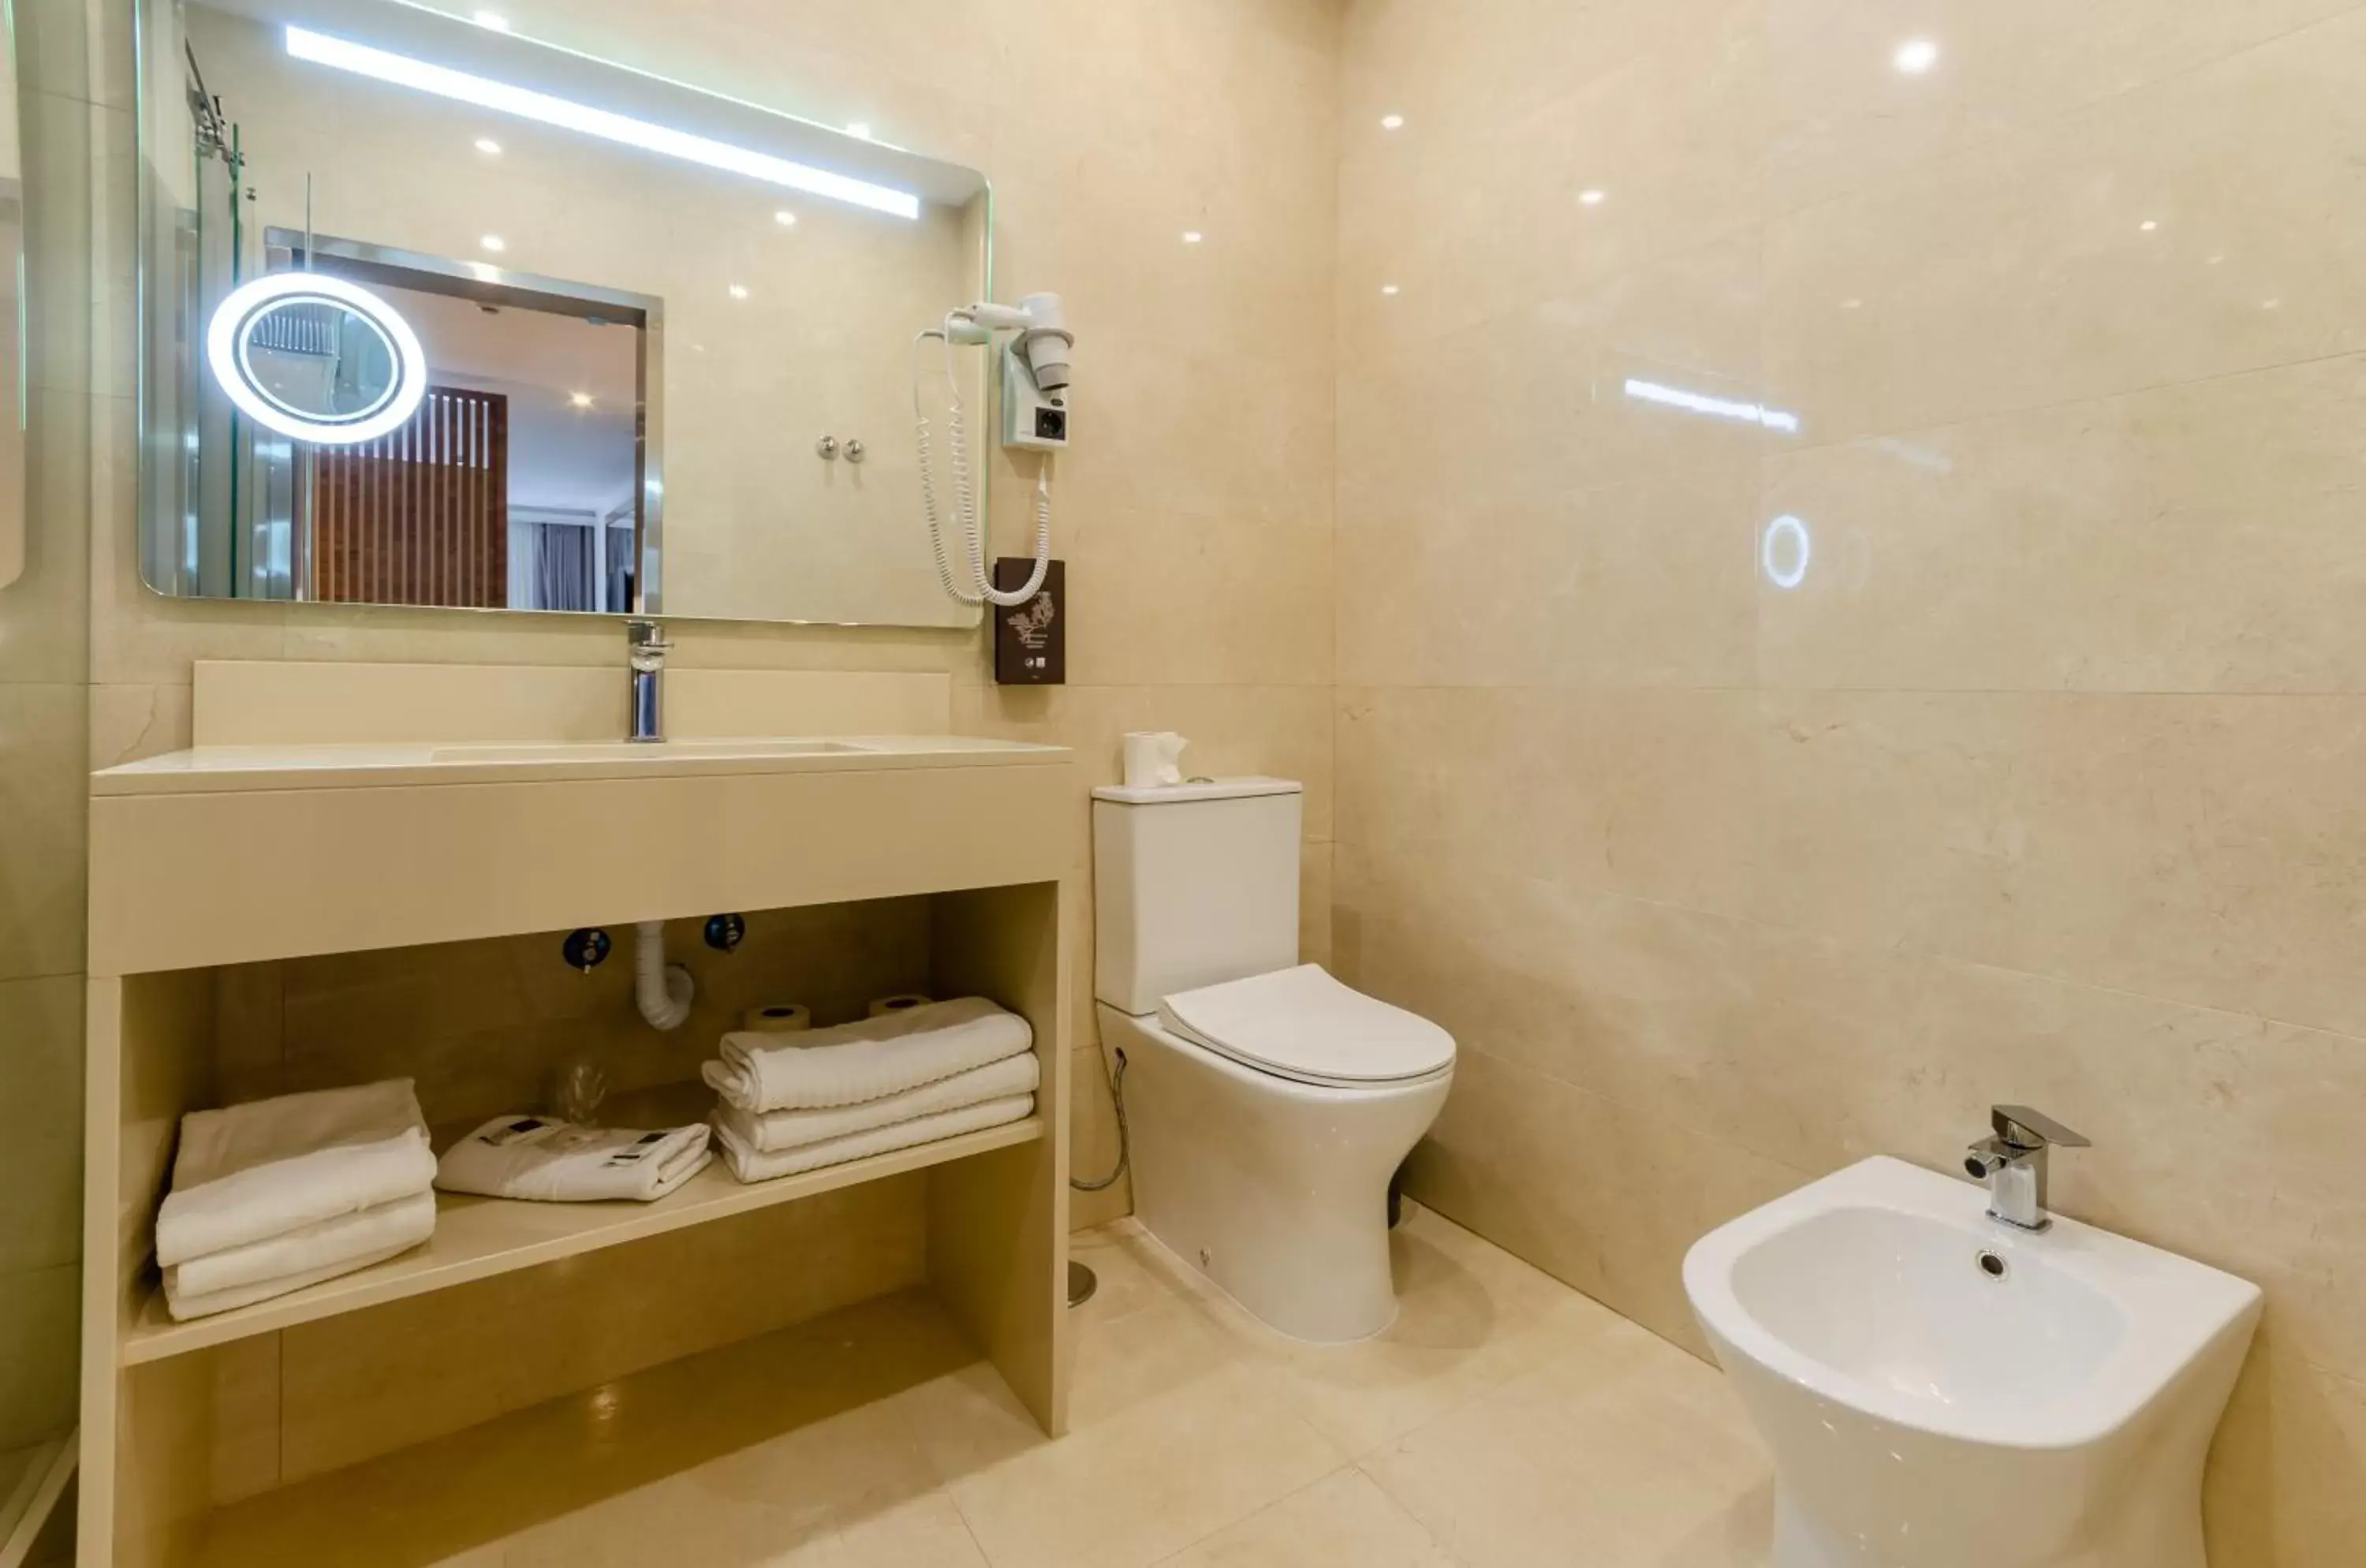 Bathroom in Hotel Borges Chiado